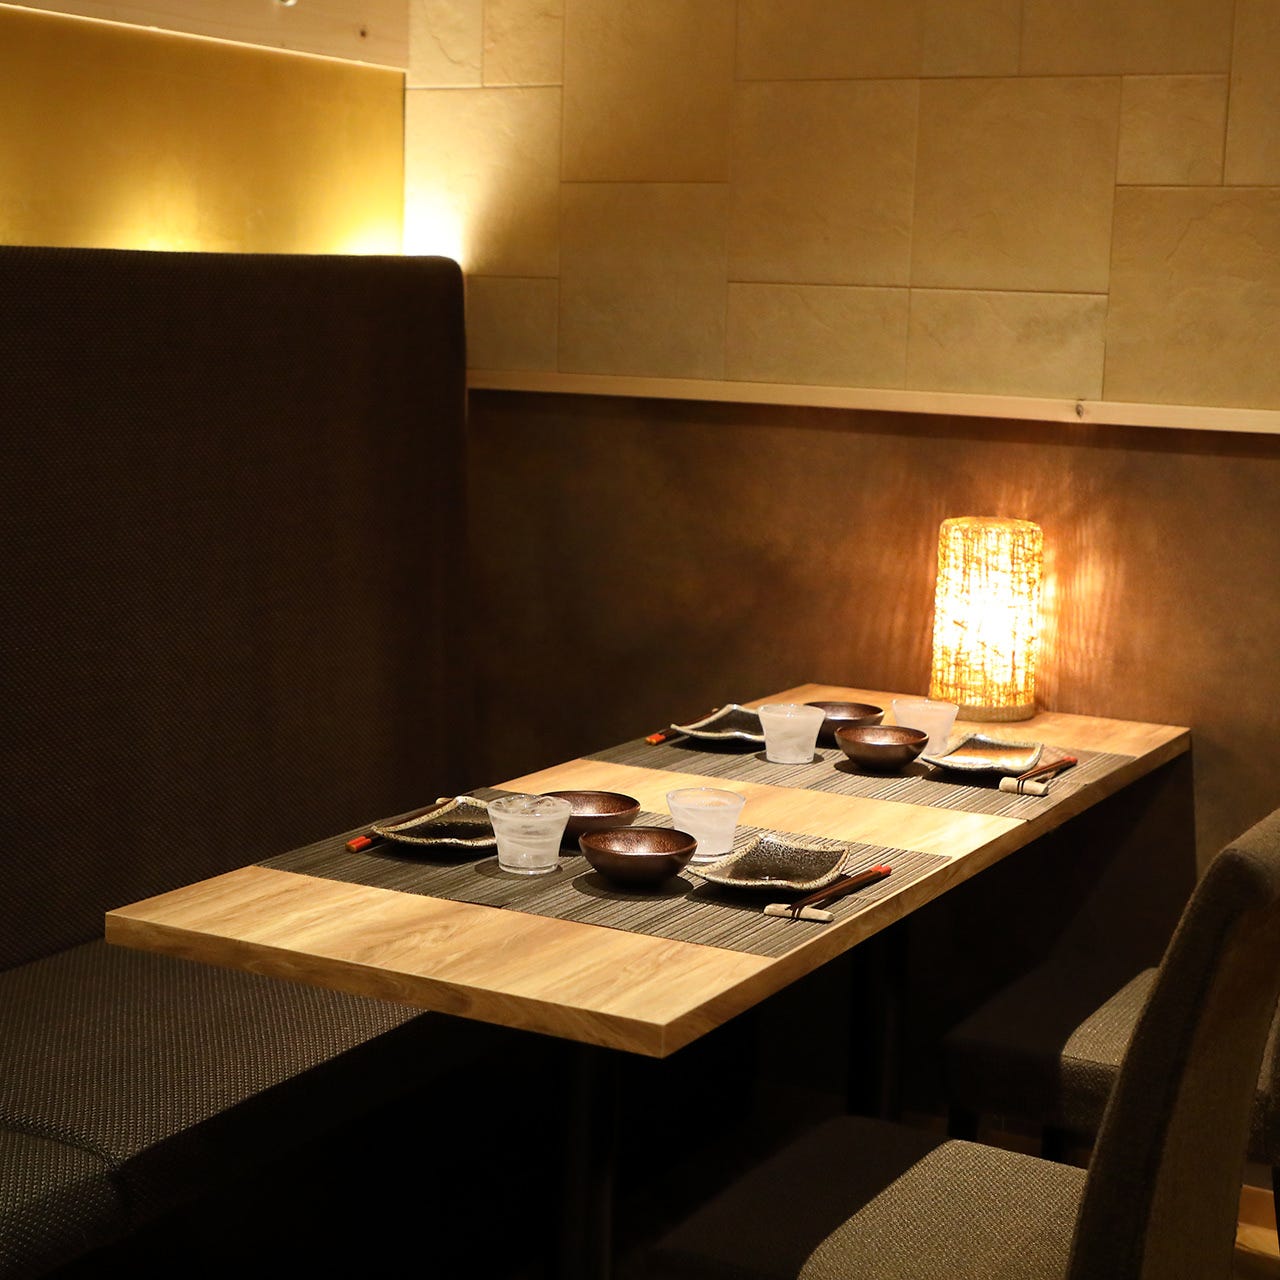 21年 最新グルメ 札幌すすきのにある飲み食べ放題コースのあるお店 レストラン カフェ 居酒屋のネット予約 北海道版